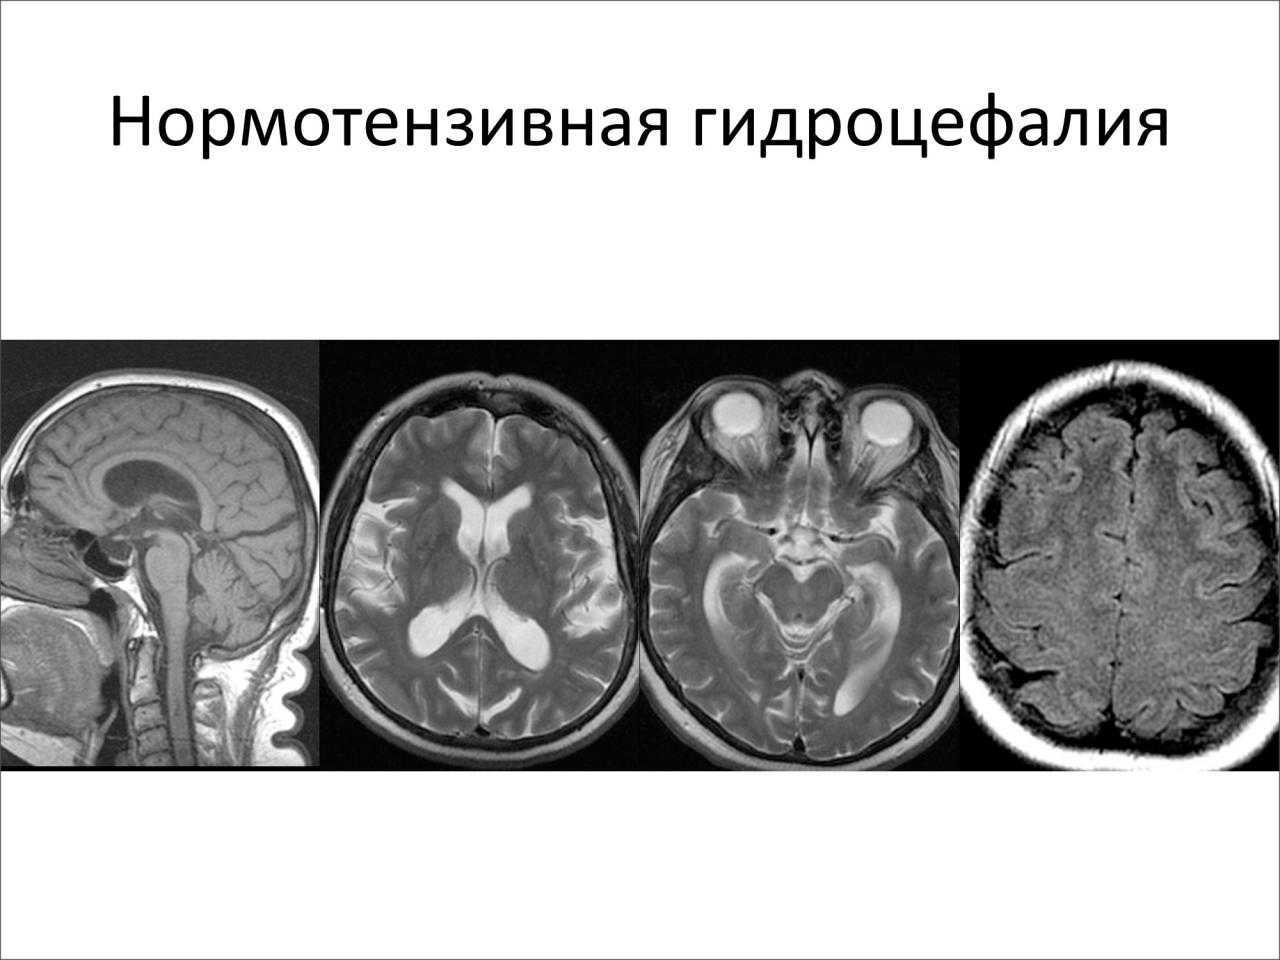 Клинические симптомы гидроцефалии. Нормотензивная гидроцефалия мрт. Наружная гидроцефалия головного мозга кт. Компьютерная томография головного мозга гидроцефалия.